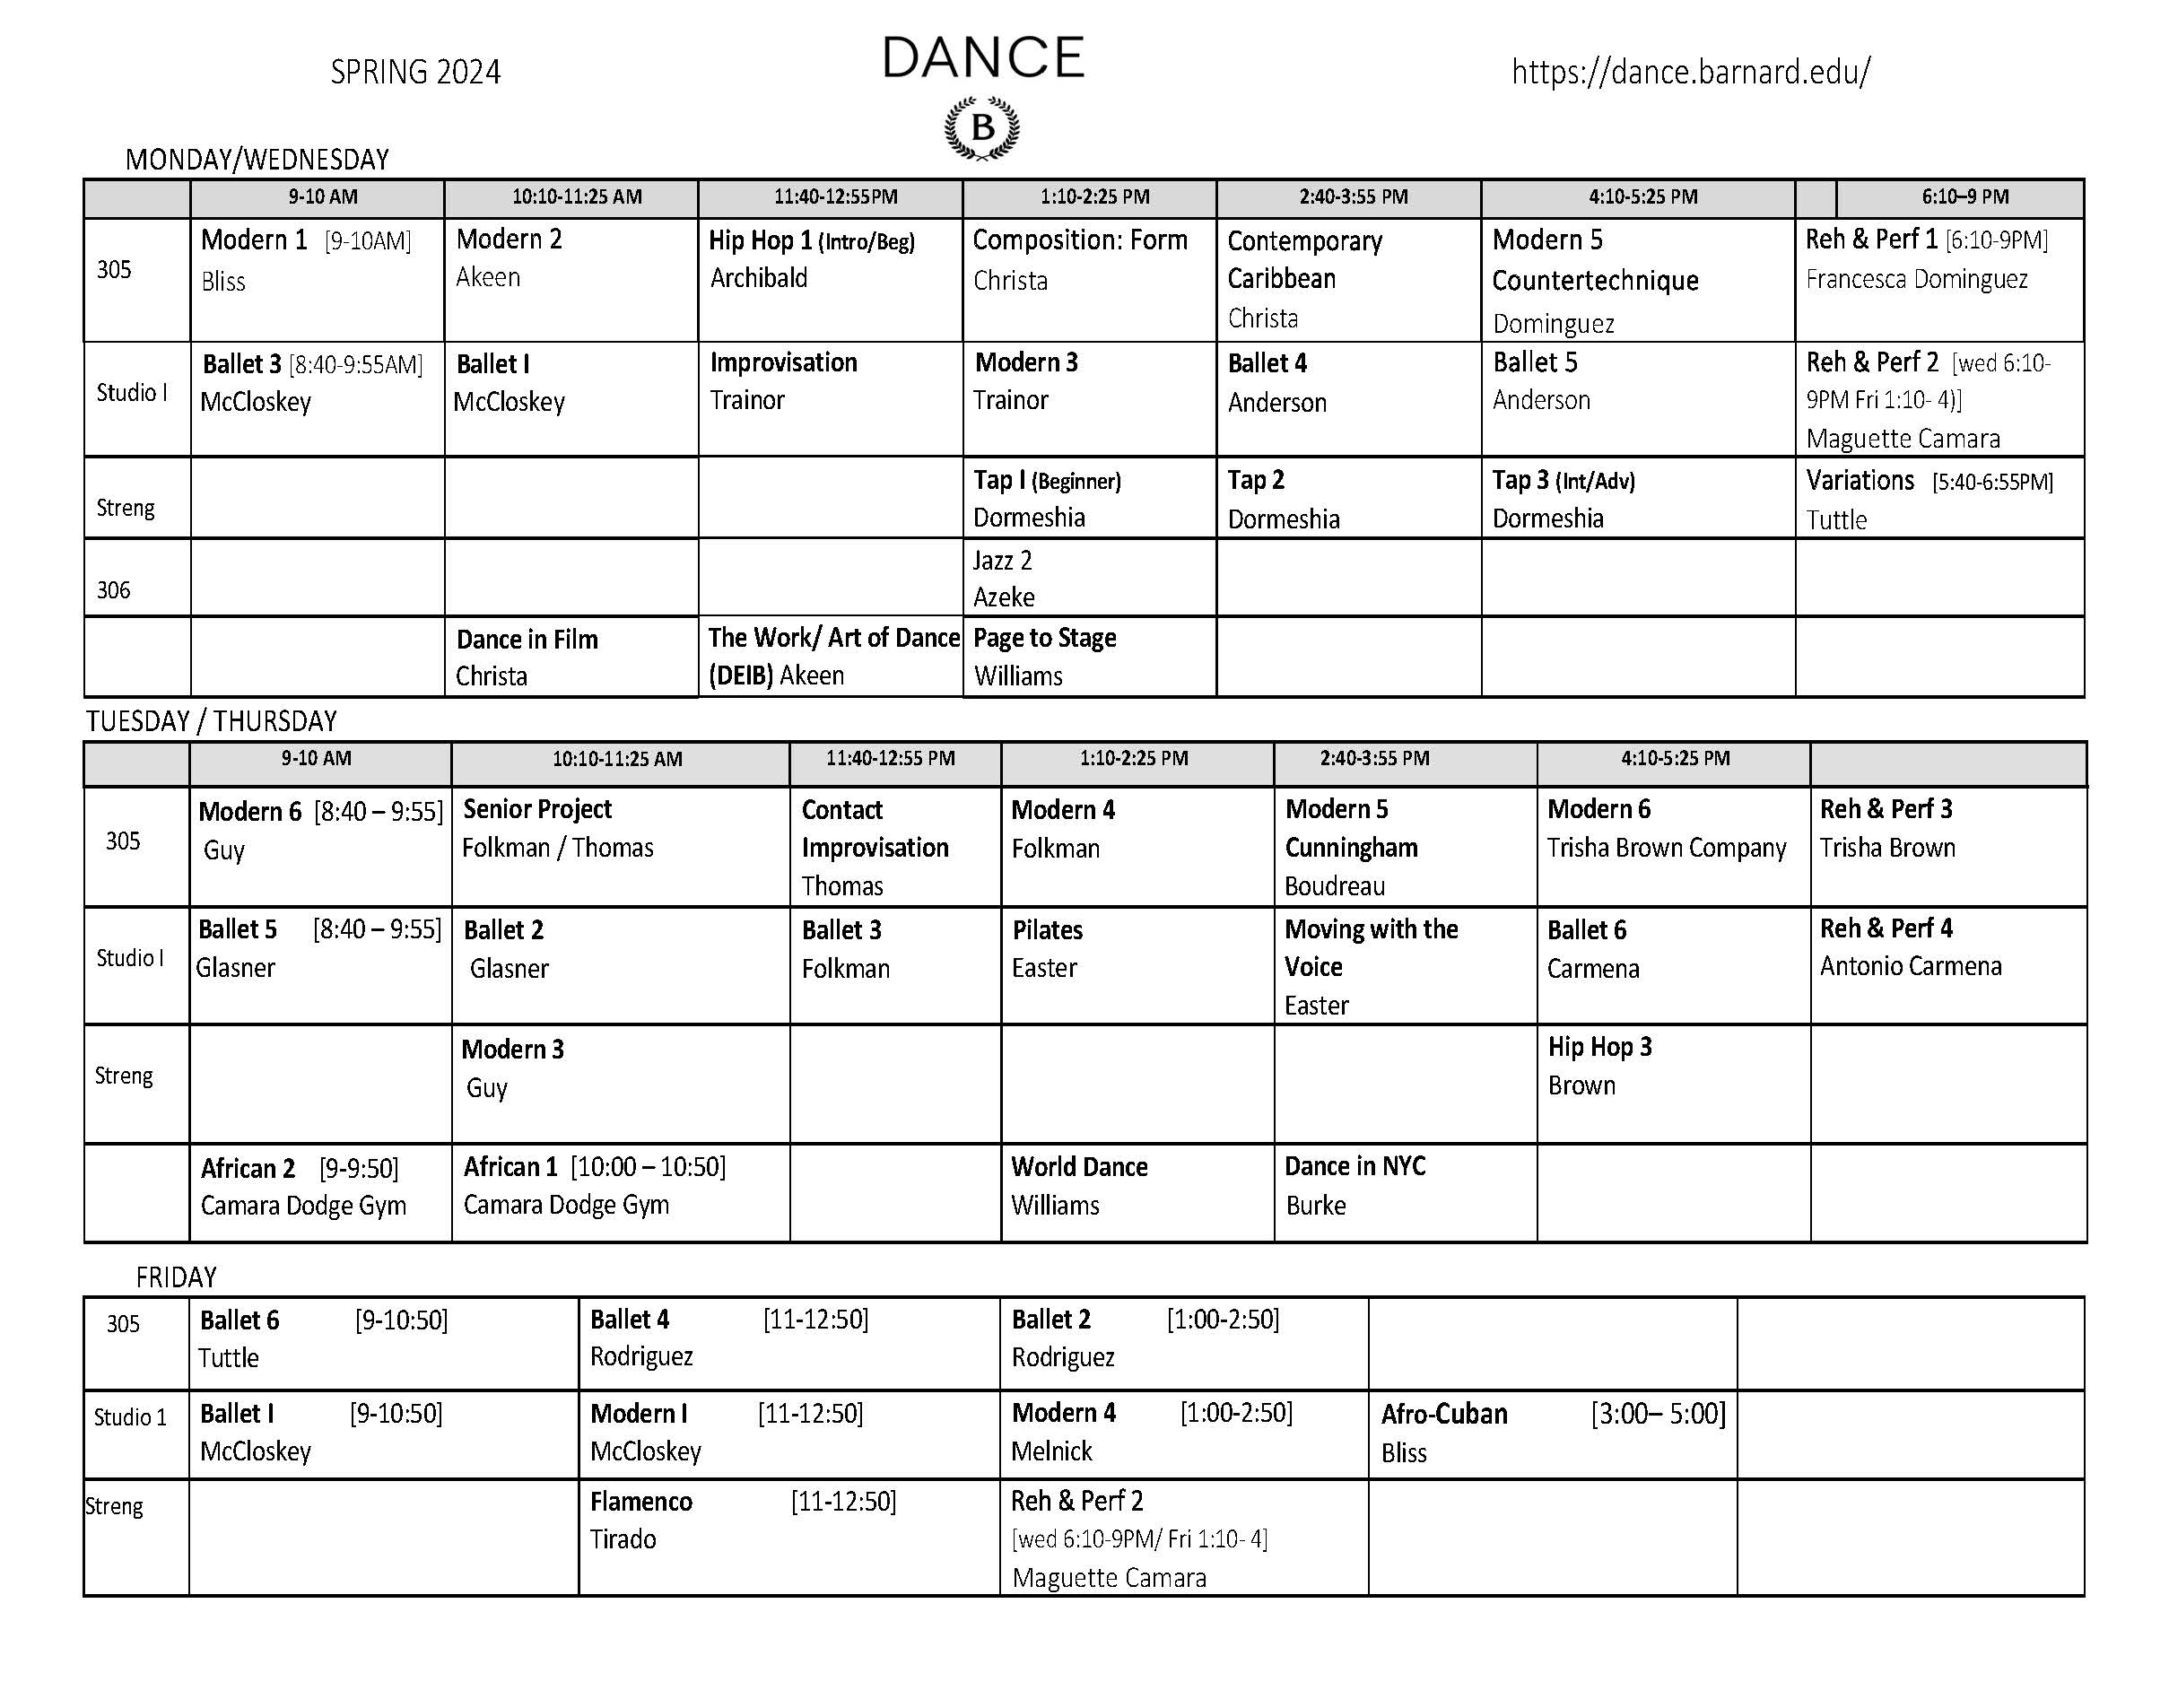 Dance spring 2024 block schedule